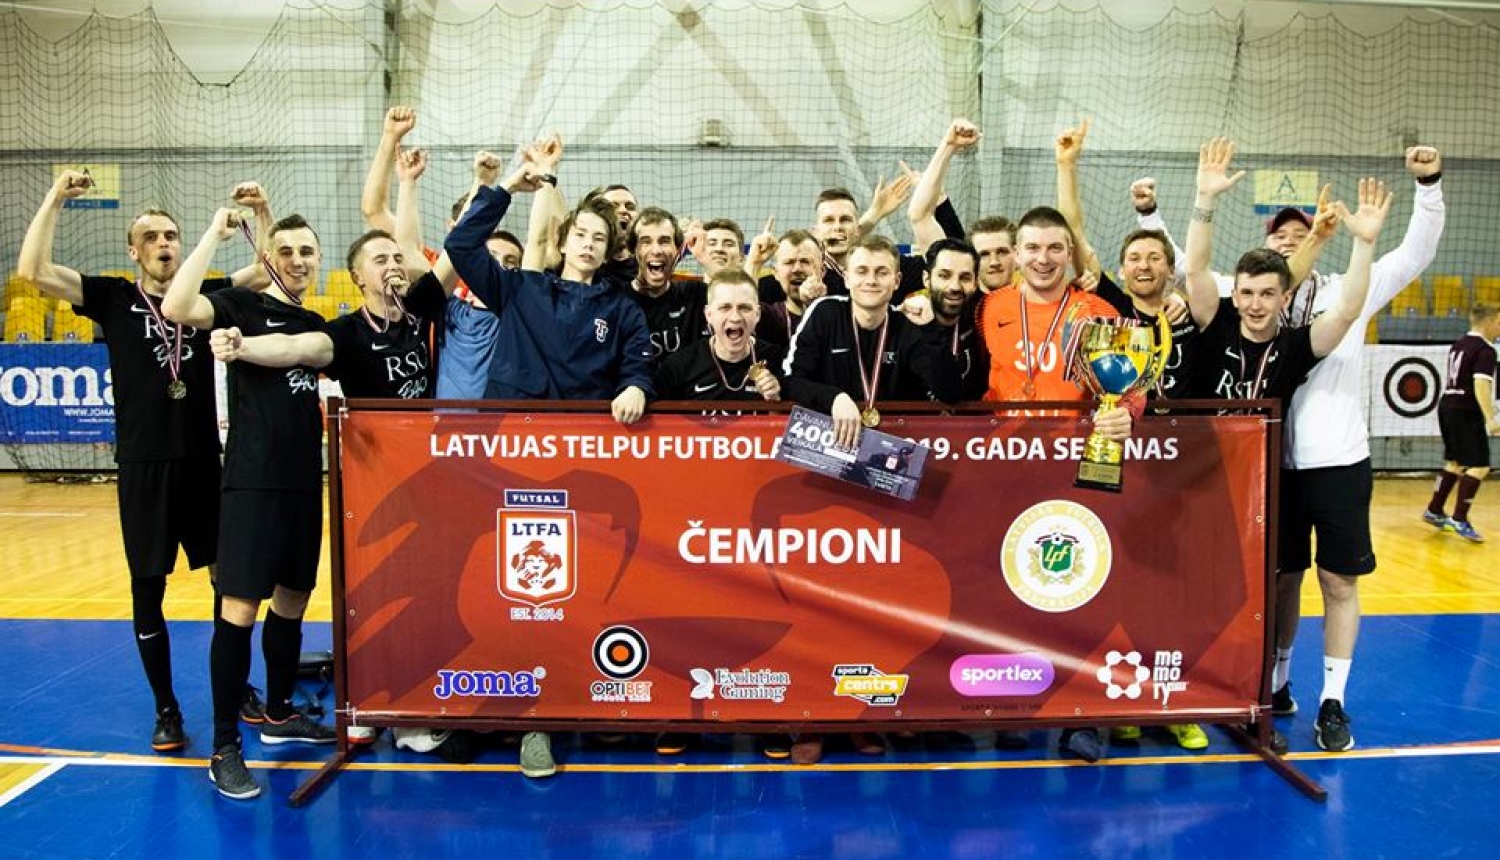 Dobelniekiem Latvijas telpu futbolā čempionu tituls